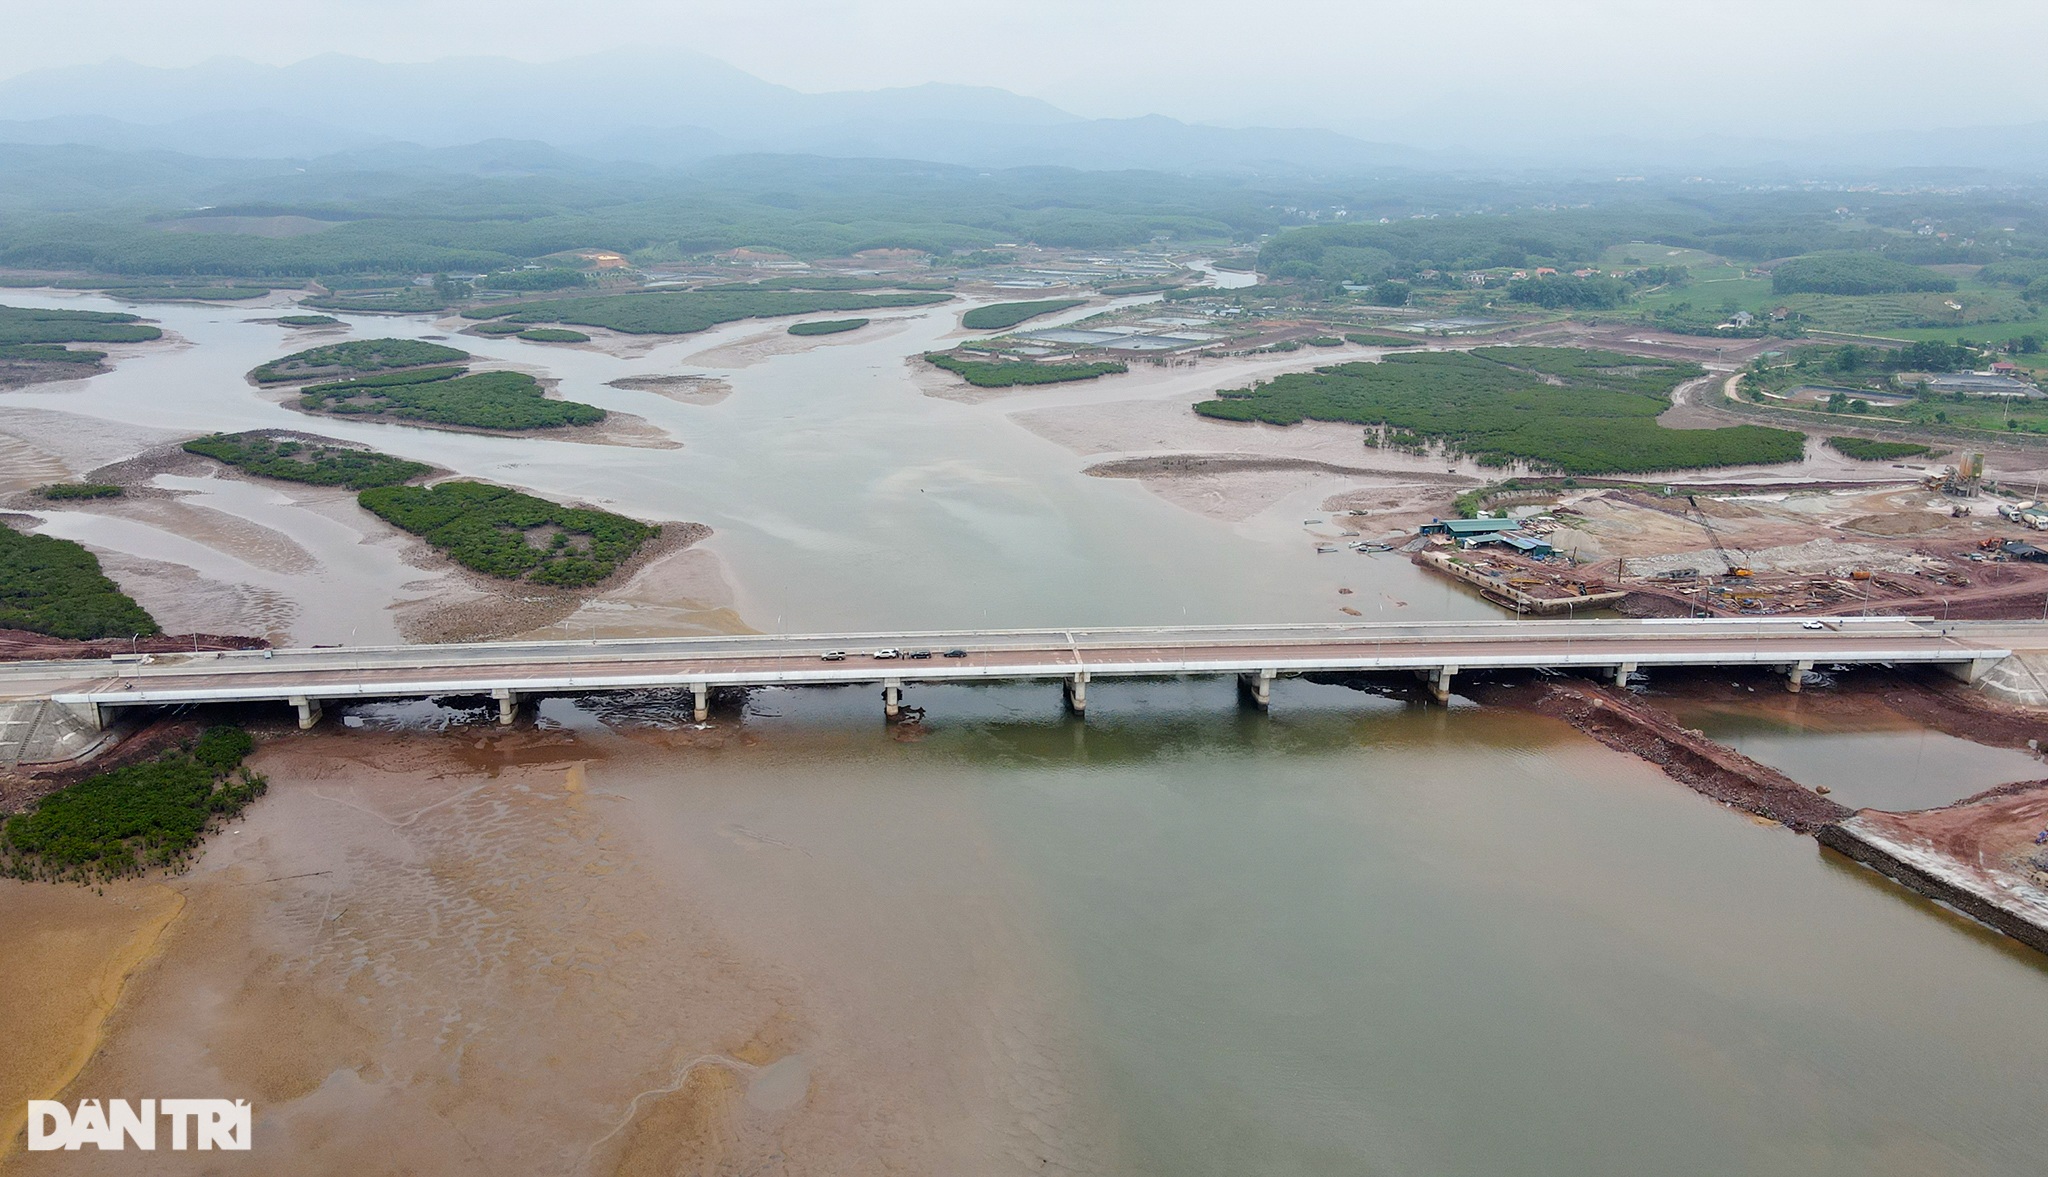 Chiêm ngưỡng cầu vượt biển 800 tỷ đồng dài nhất tỉnh Quảng Ninh - 12